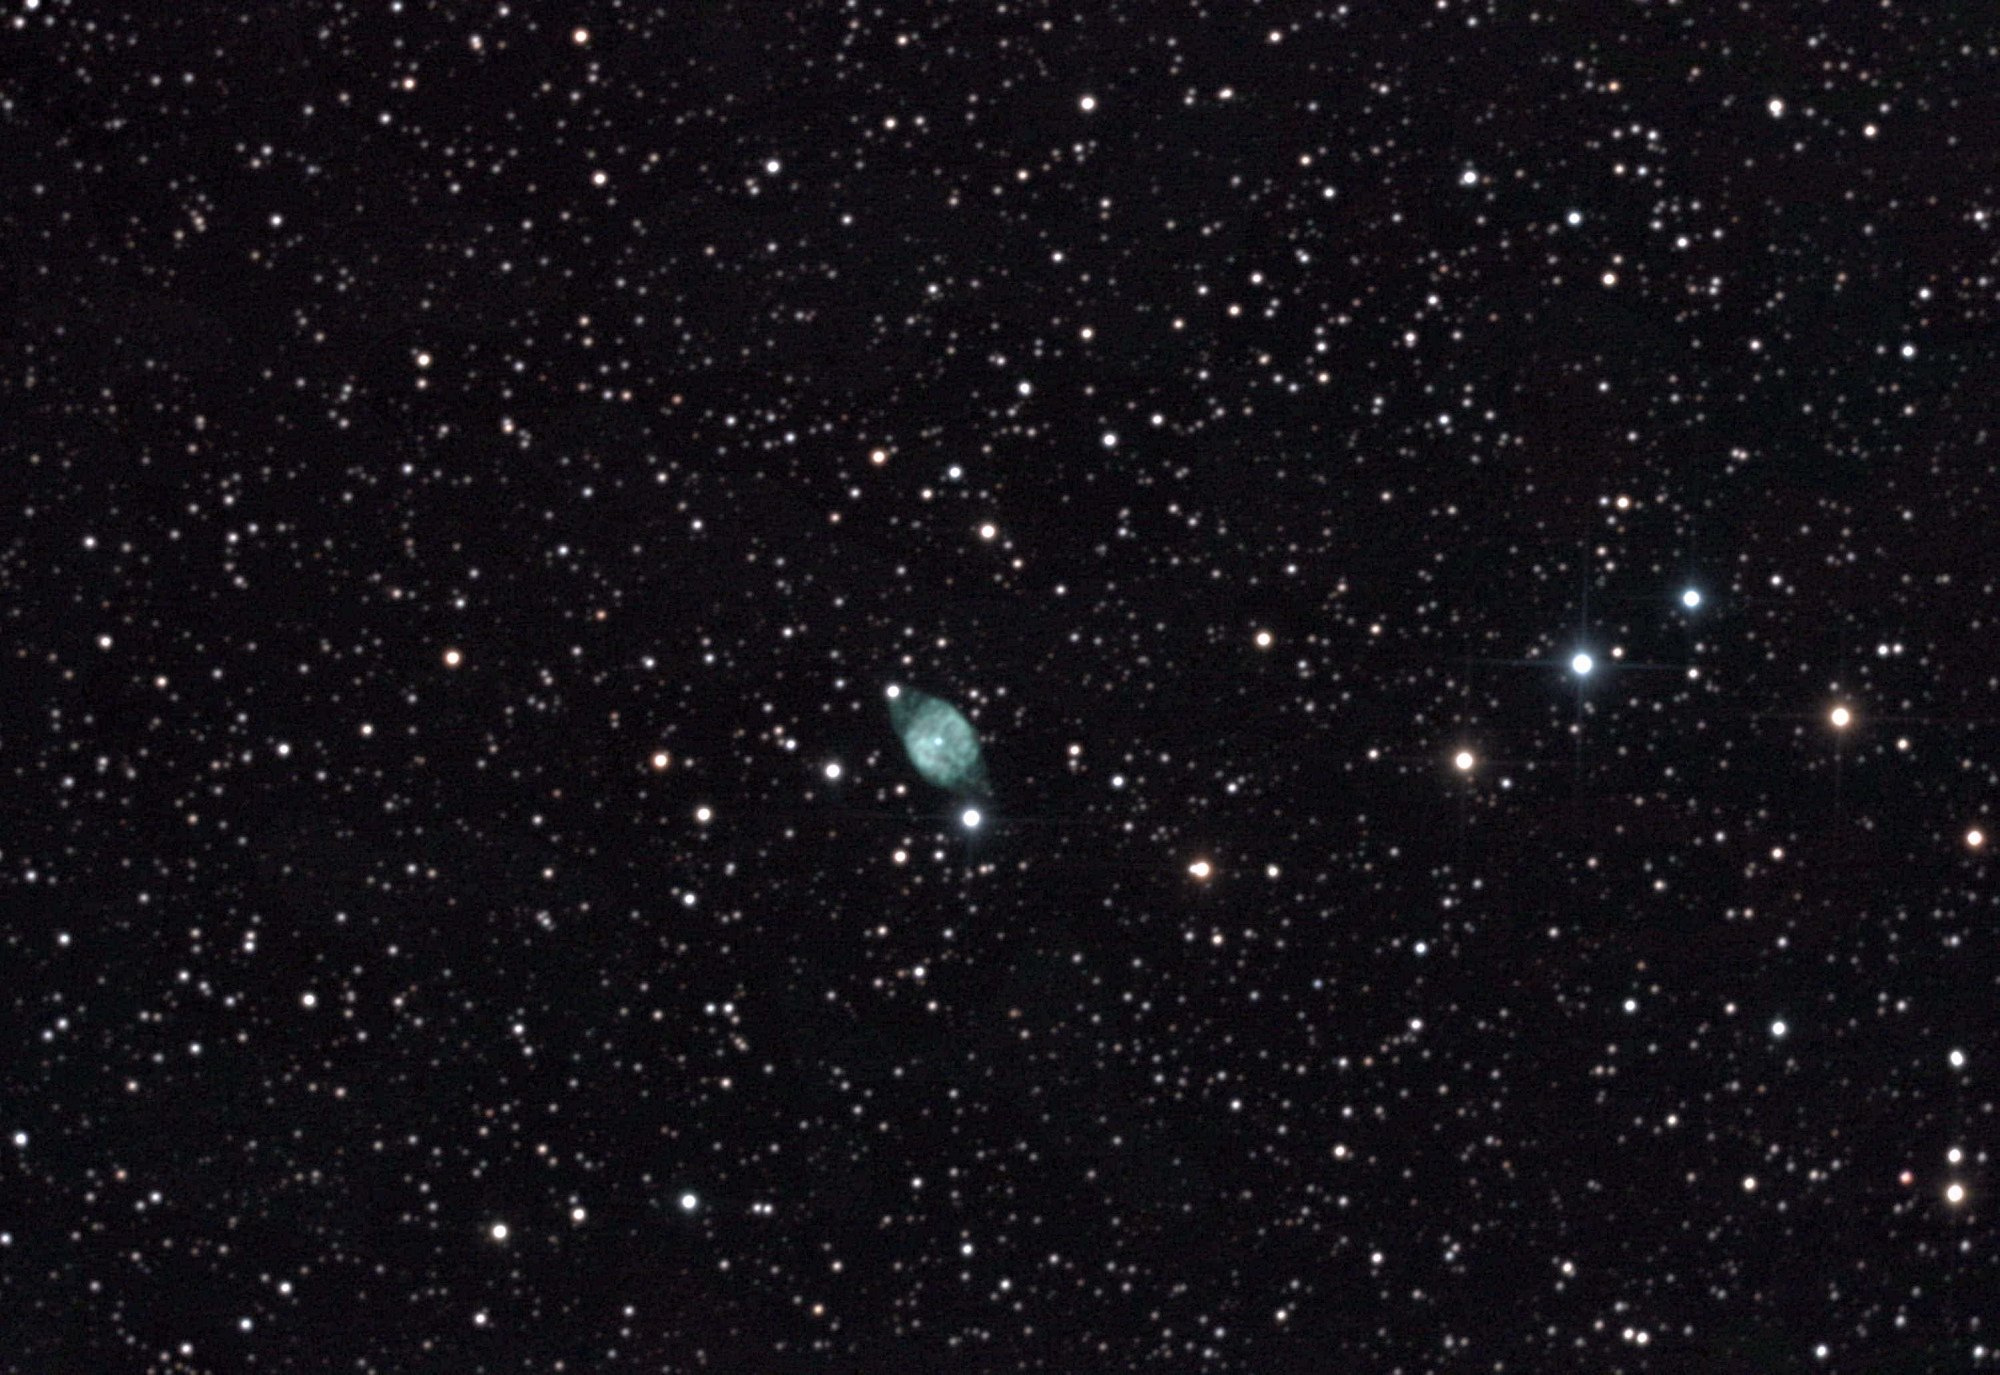 NGC6905-diff.thumb.jpg.37334a3581b26e49637202a2c88bd1be2.jpg.47821f592477420684ec5ba4793ad3aa.jpg.2ec65a7b844c05ca22dff58e3b13faa0.jpg